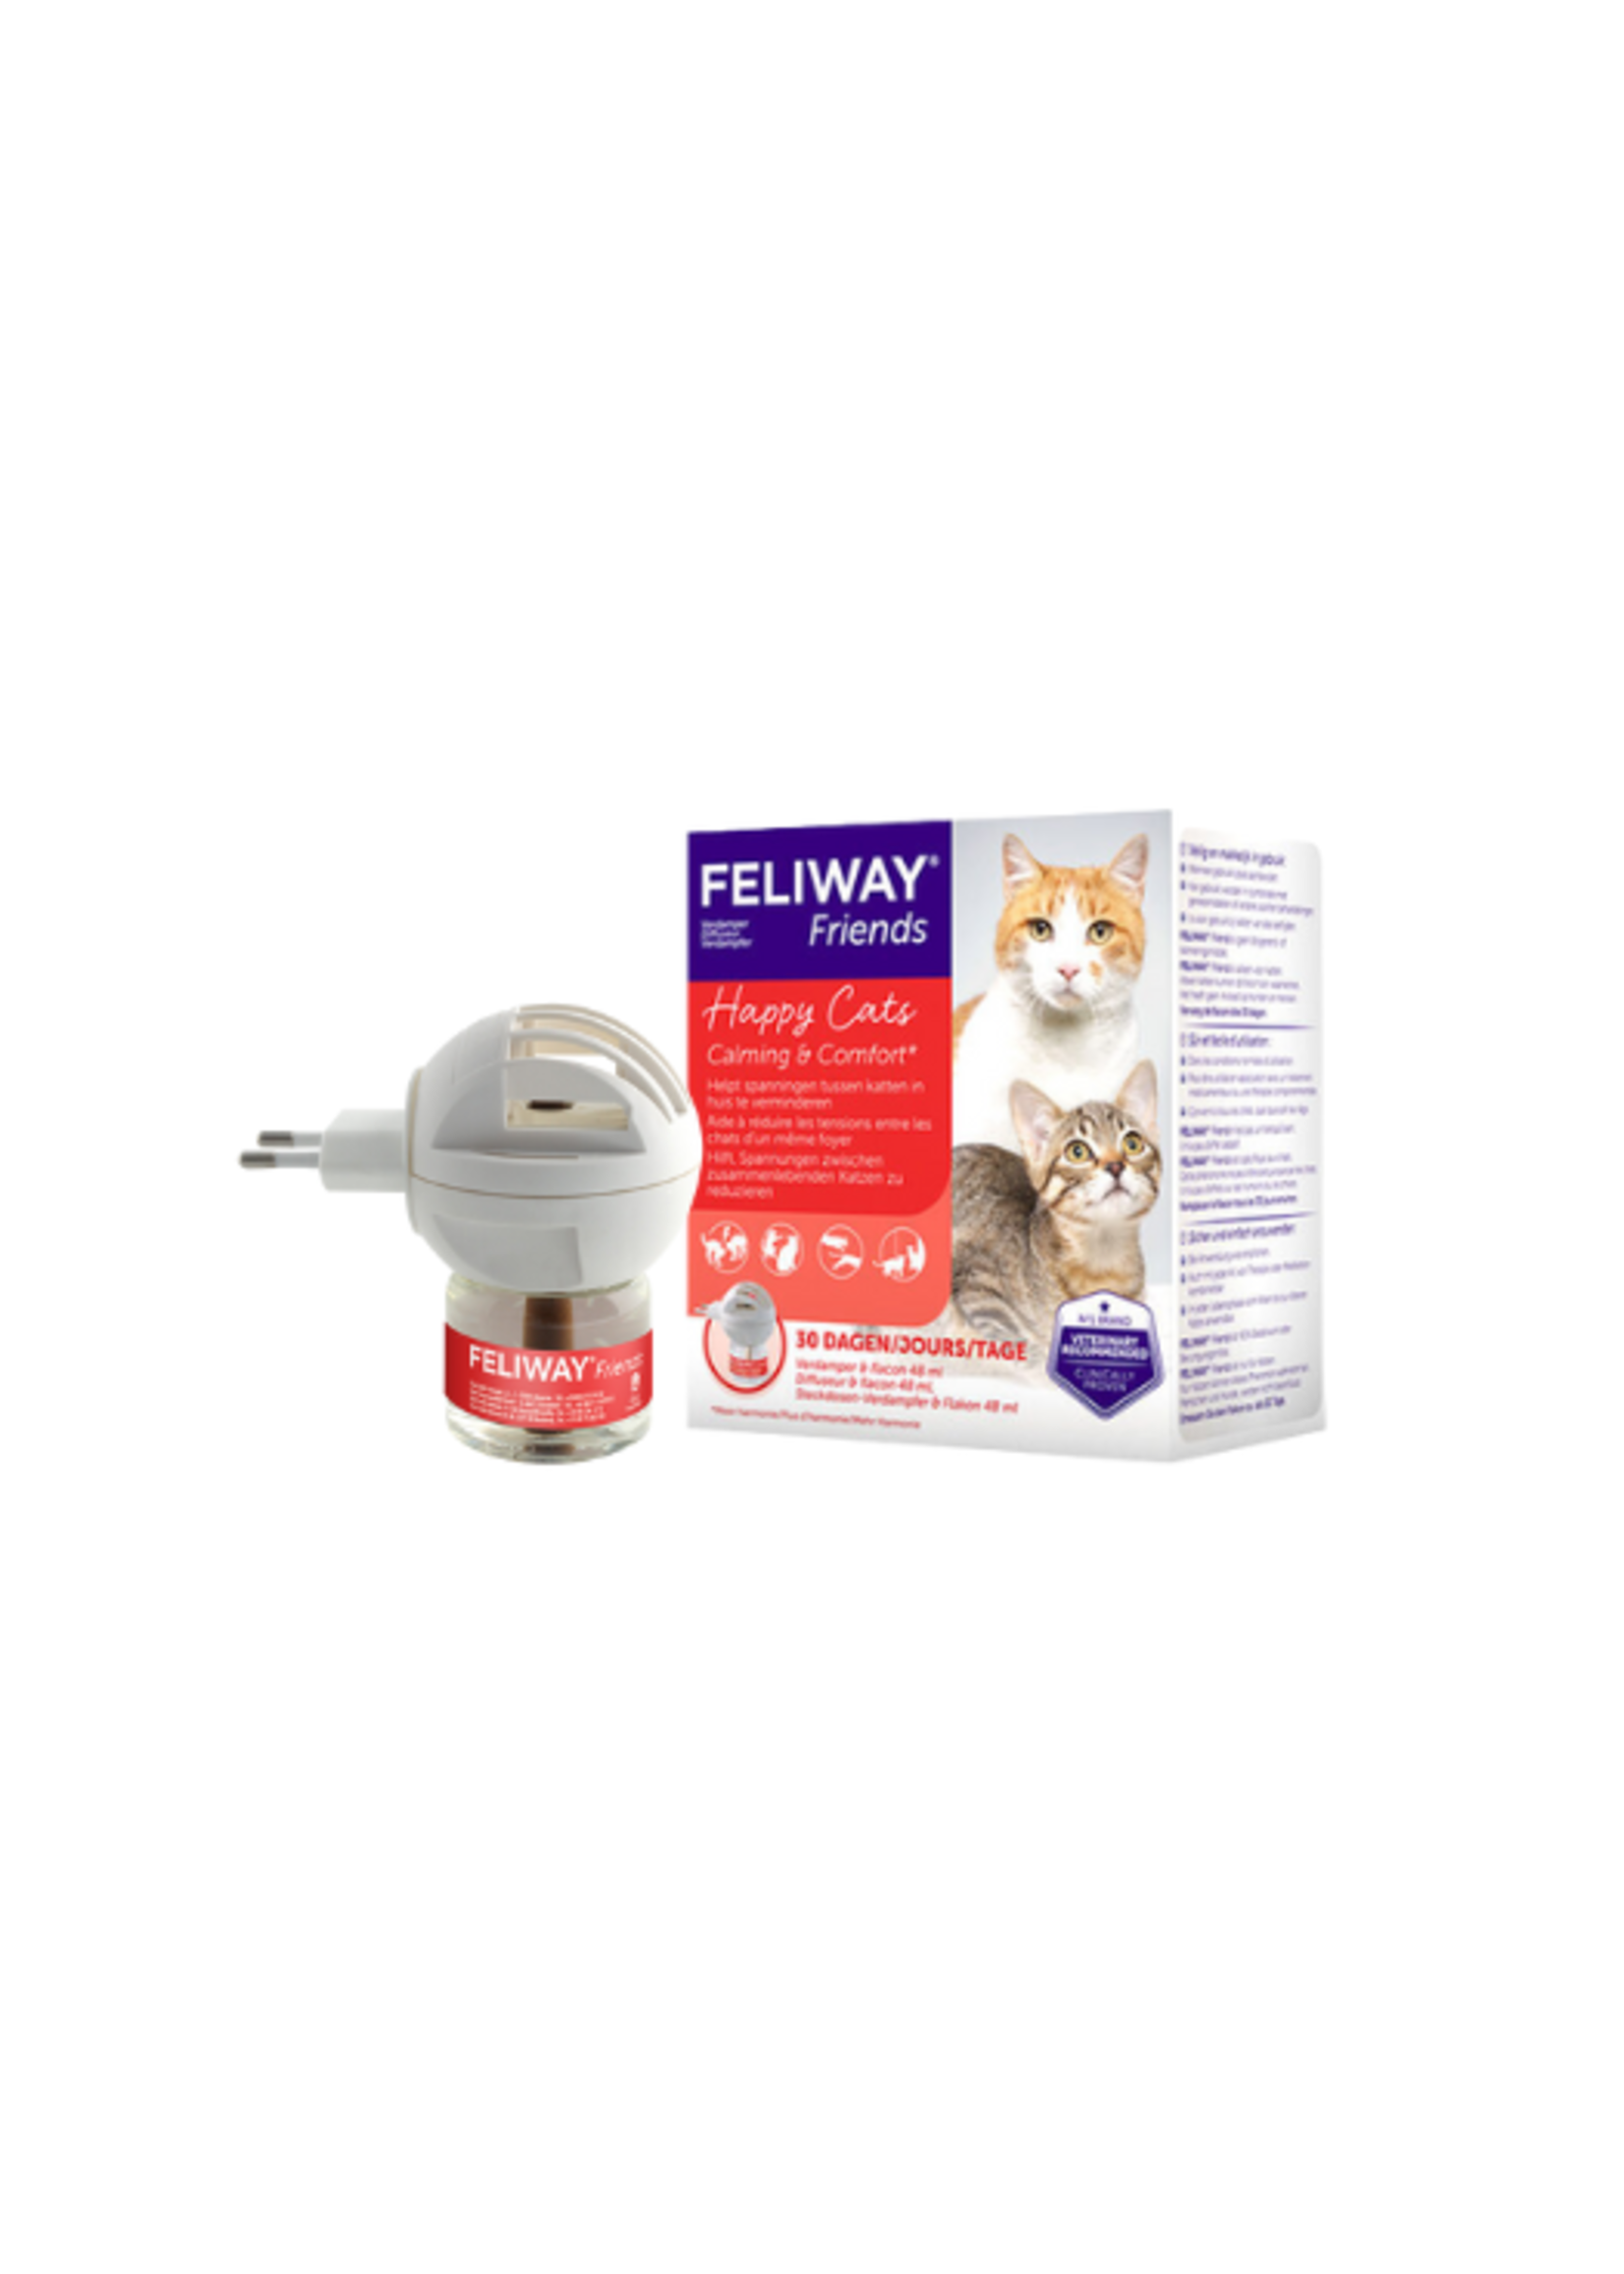 Feliway Feliway Friends | Vermindert spanning tussen katten